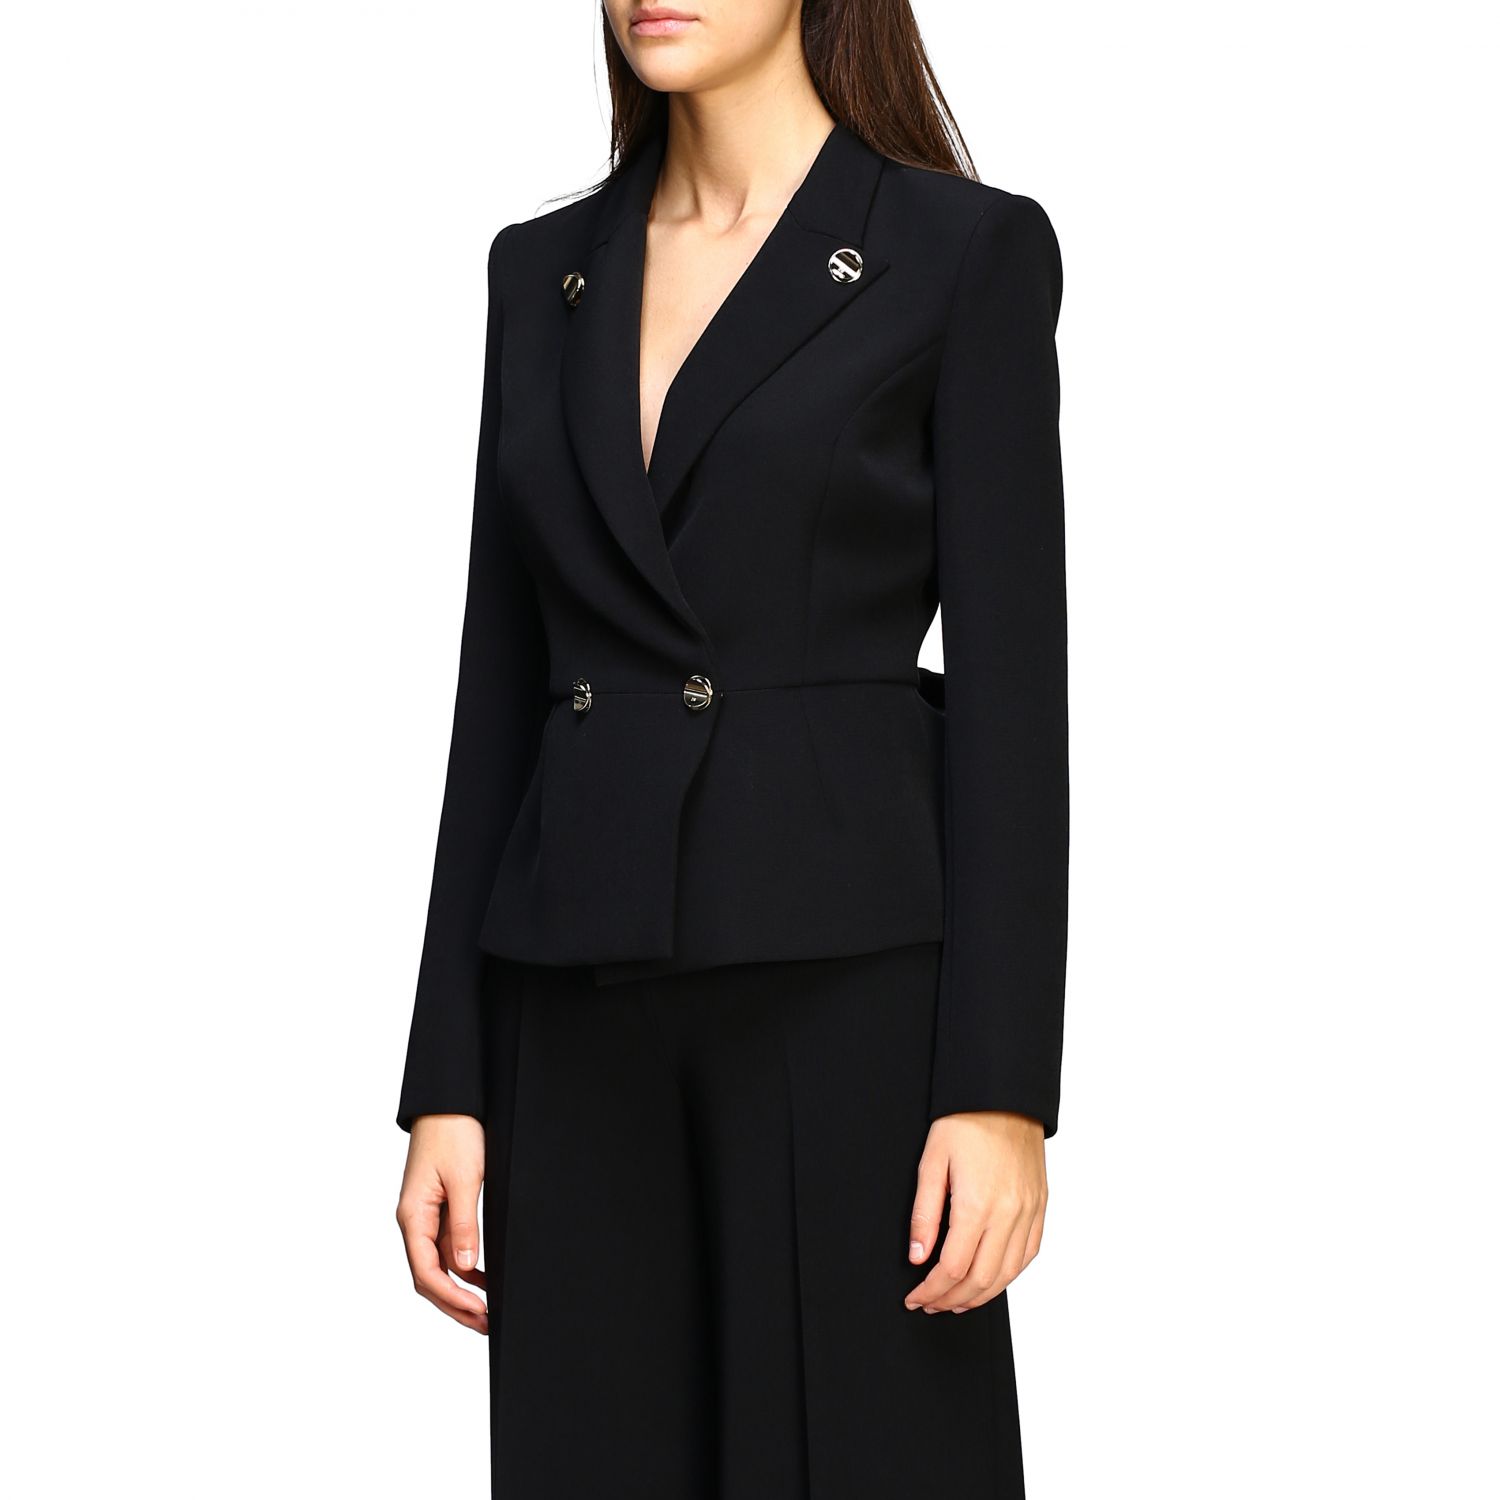 Elisabetta Franchi Outlet: suit for women - Black | Elisabetta Franchi ...